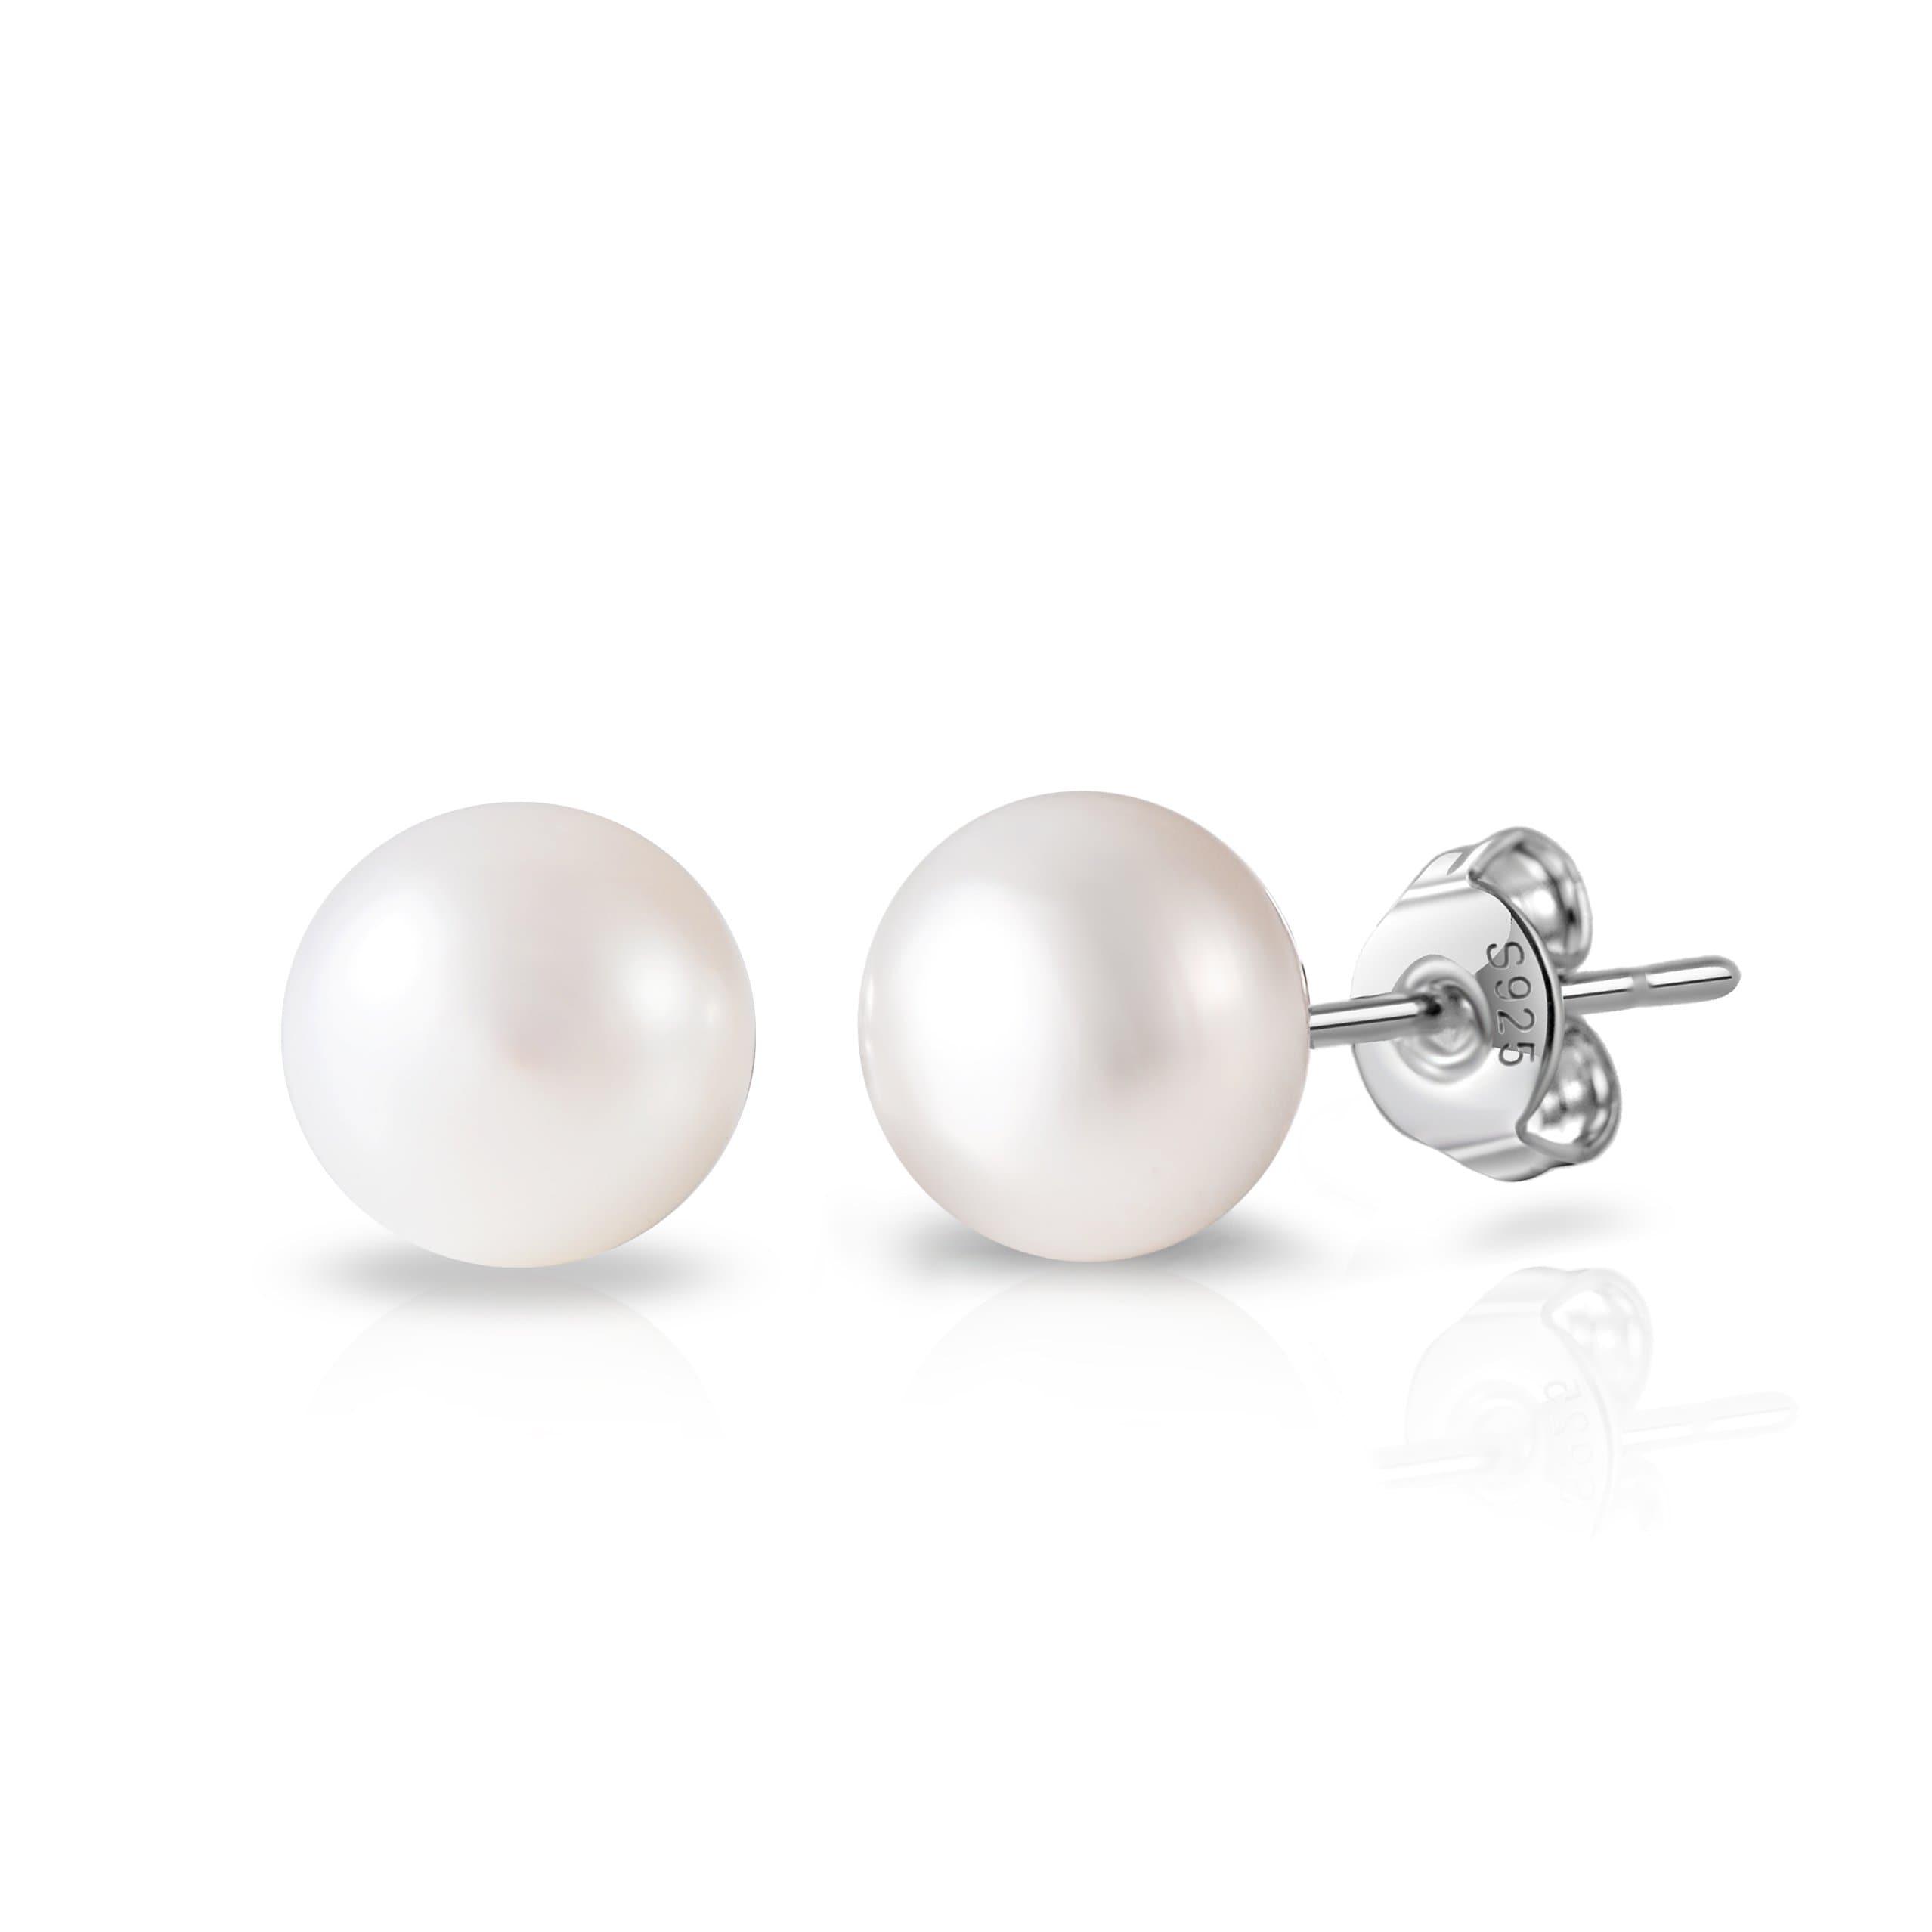 Sterling Silver Pearl Earrings by Philip Jones Jewellery